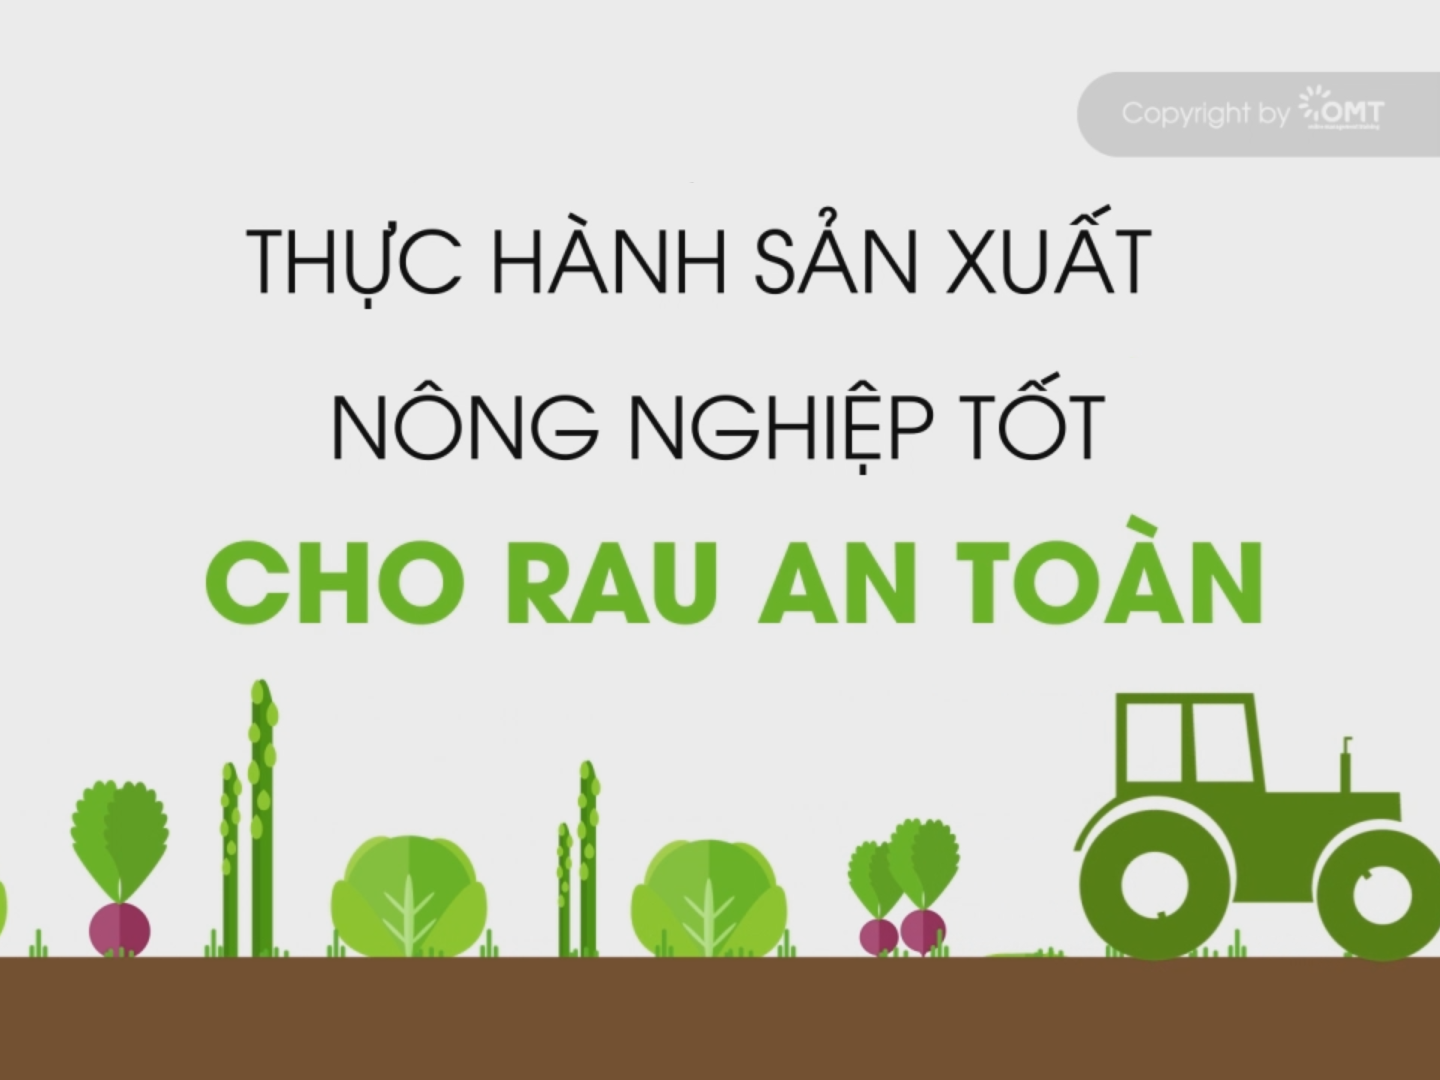 KHÓA HỌC: Thực hành sản xuất nông nghiệp tốt (VietGAP) cho rau an toàn